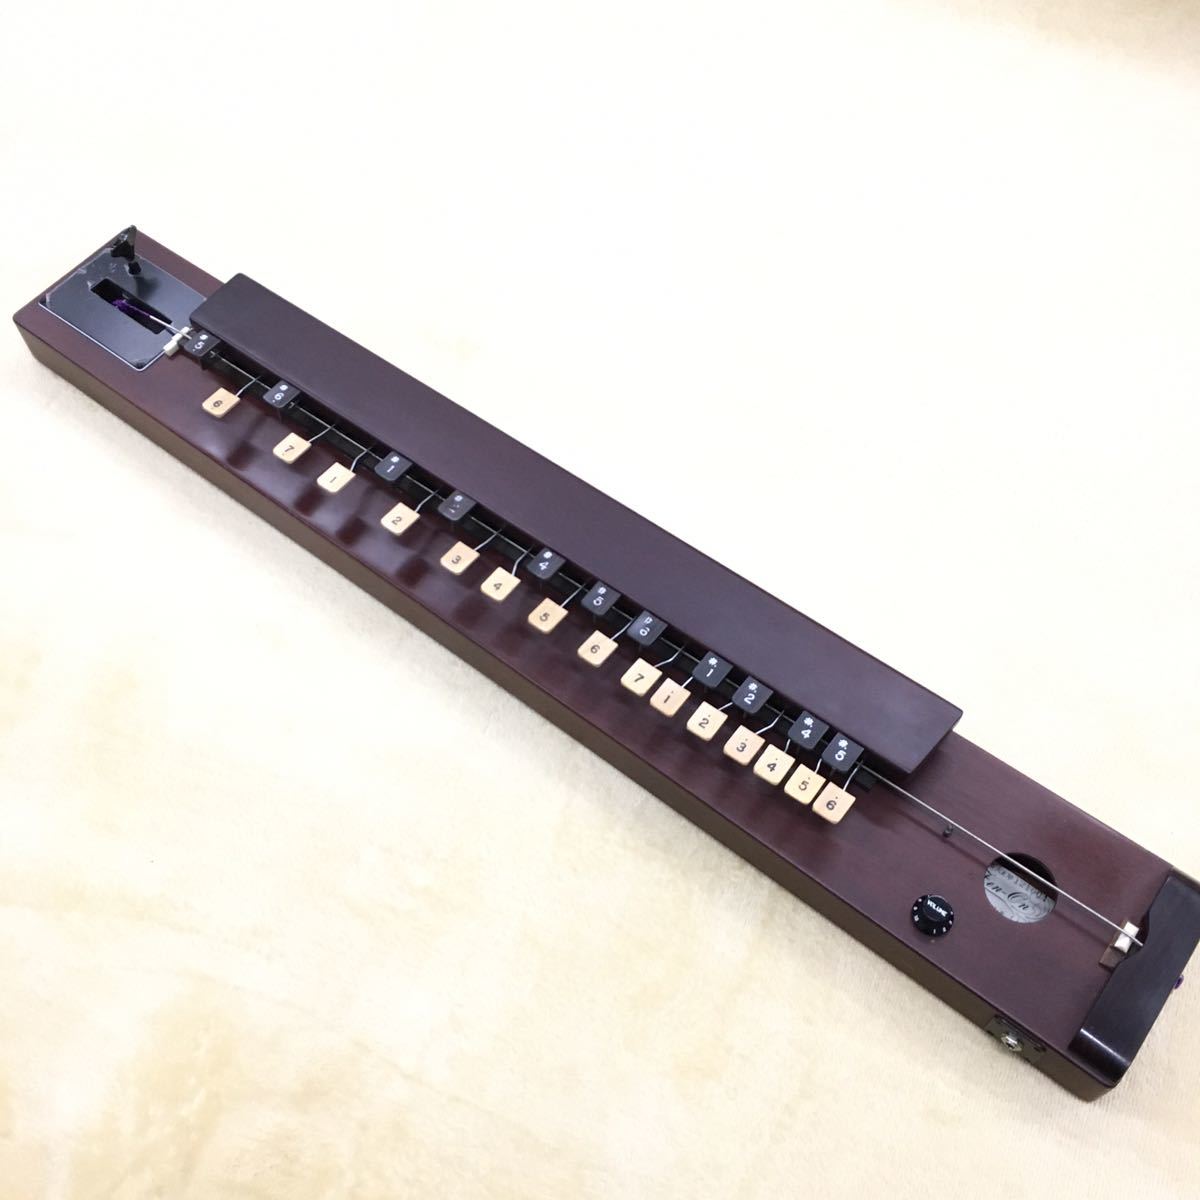  все звук Taisho koto электро традиционные японские музыкальные инструменты 1 струнные инструменты 26 ключ |5~6(G1~A3) основа электро автобус ансамбль низкий звук район 121004 сделано в Японии производство конец редкий товар 